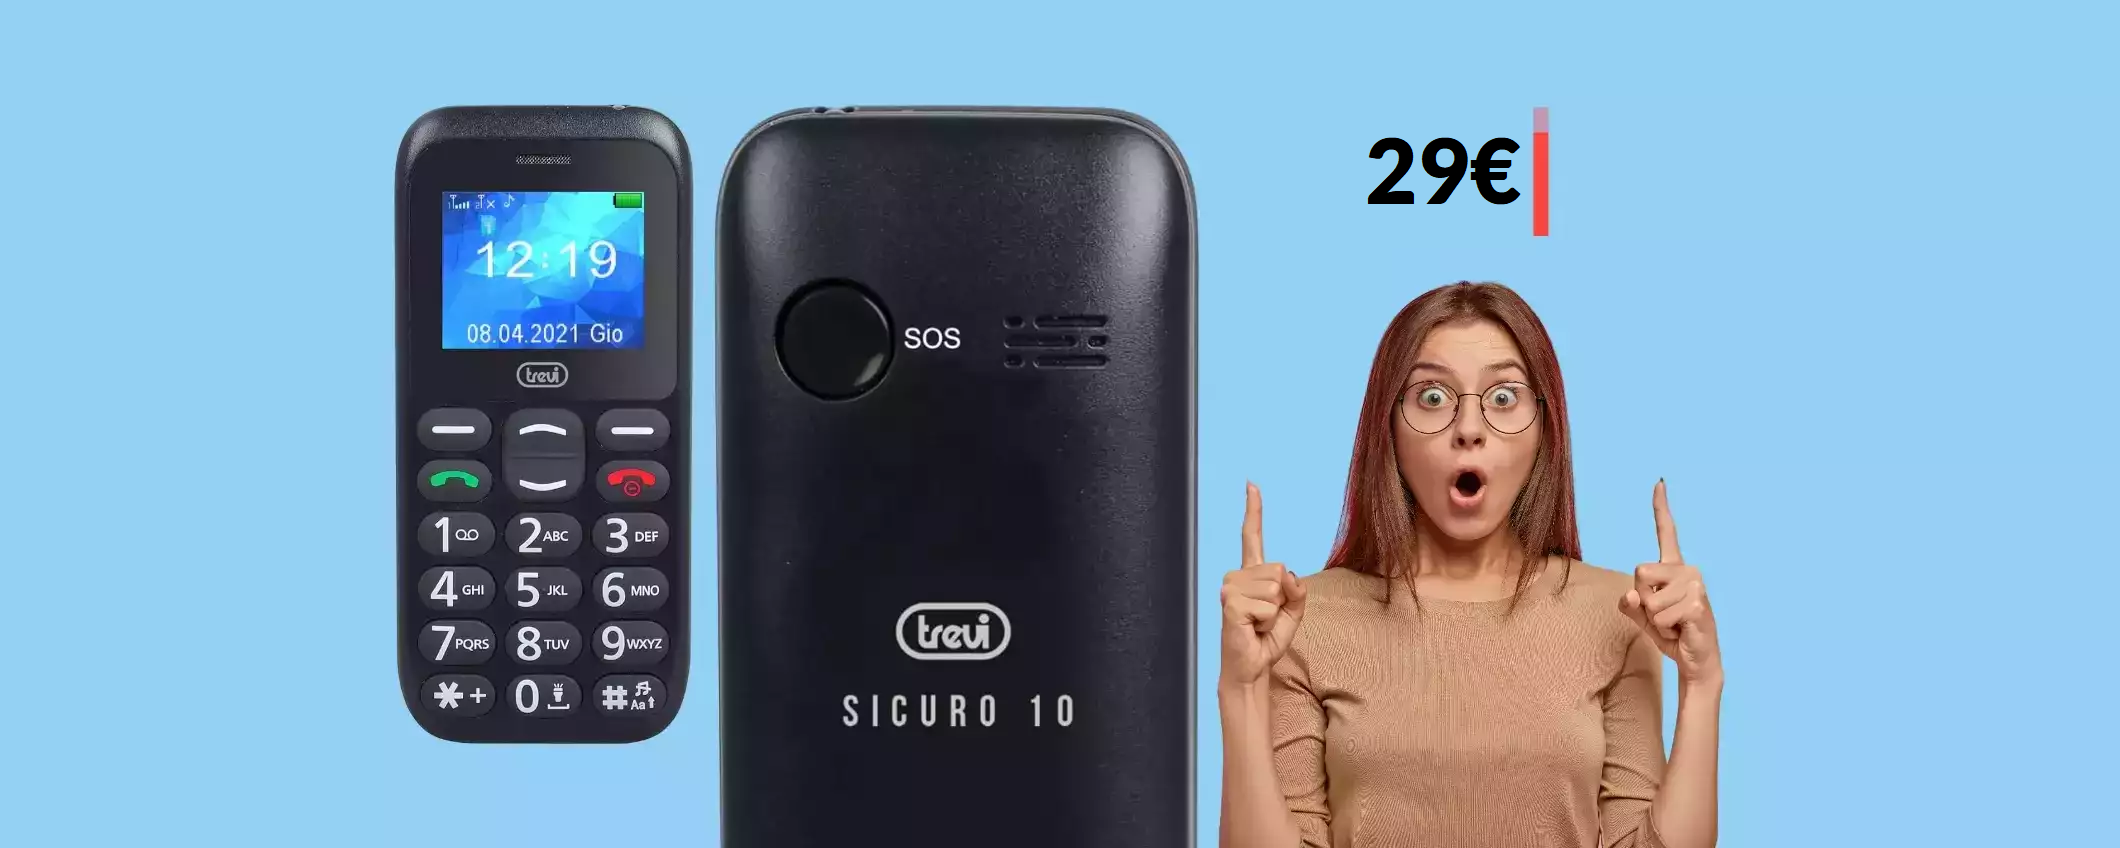 Cellulare Trevi con tasto SOS: il MIGLIORE su Amazon a soli 29€